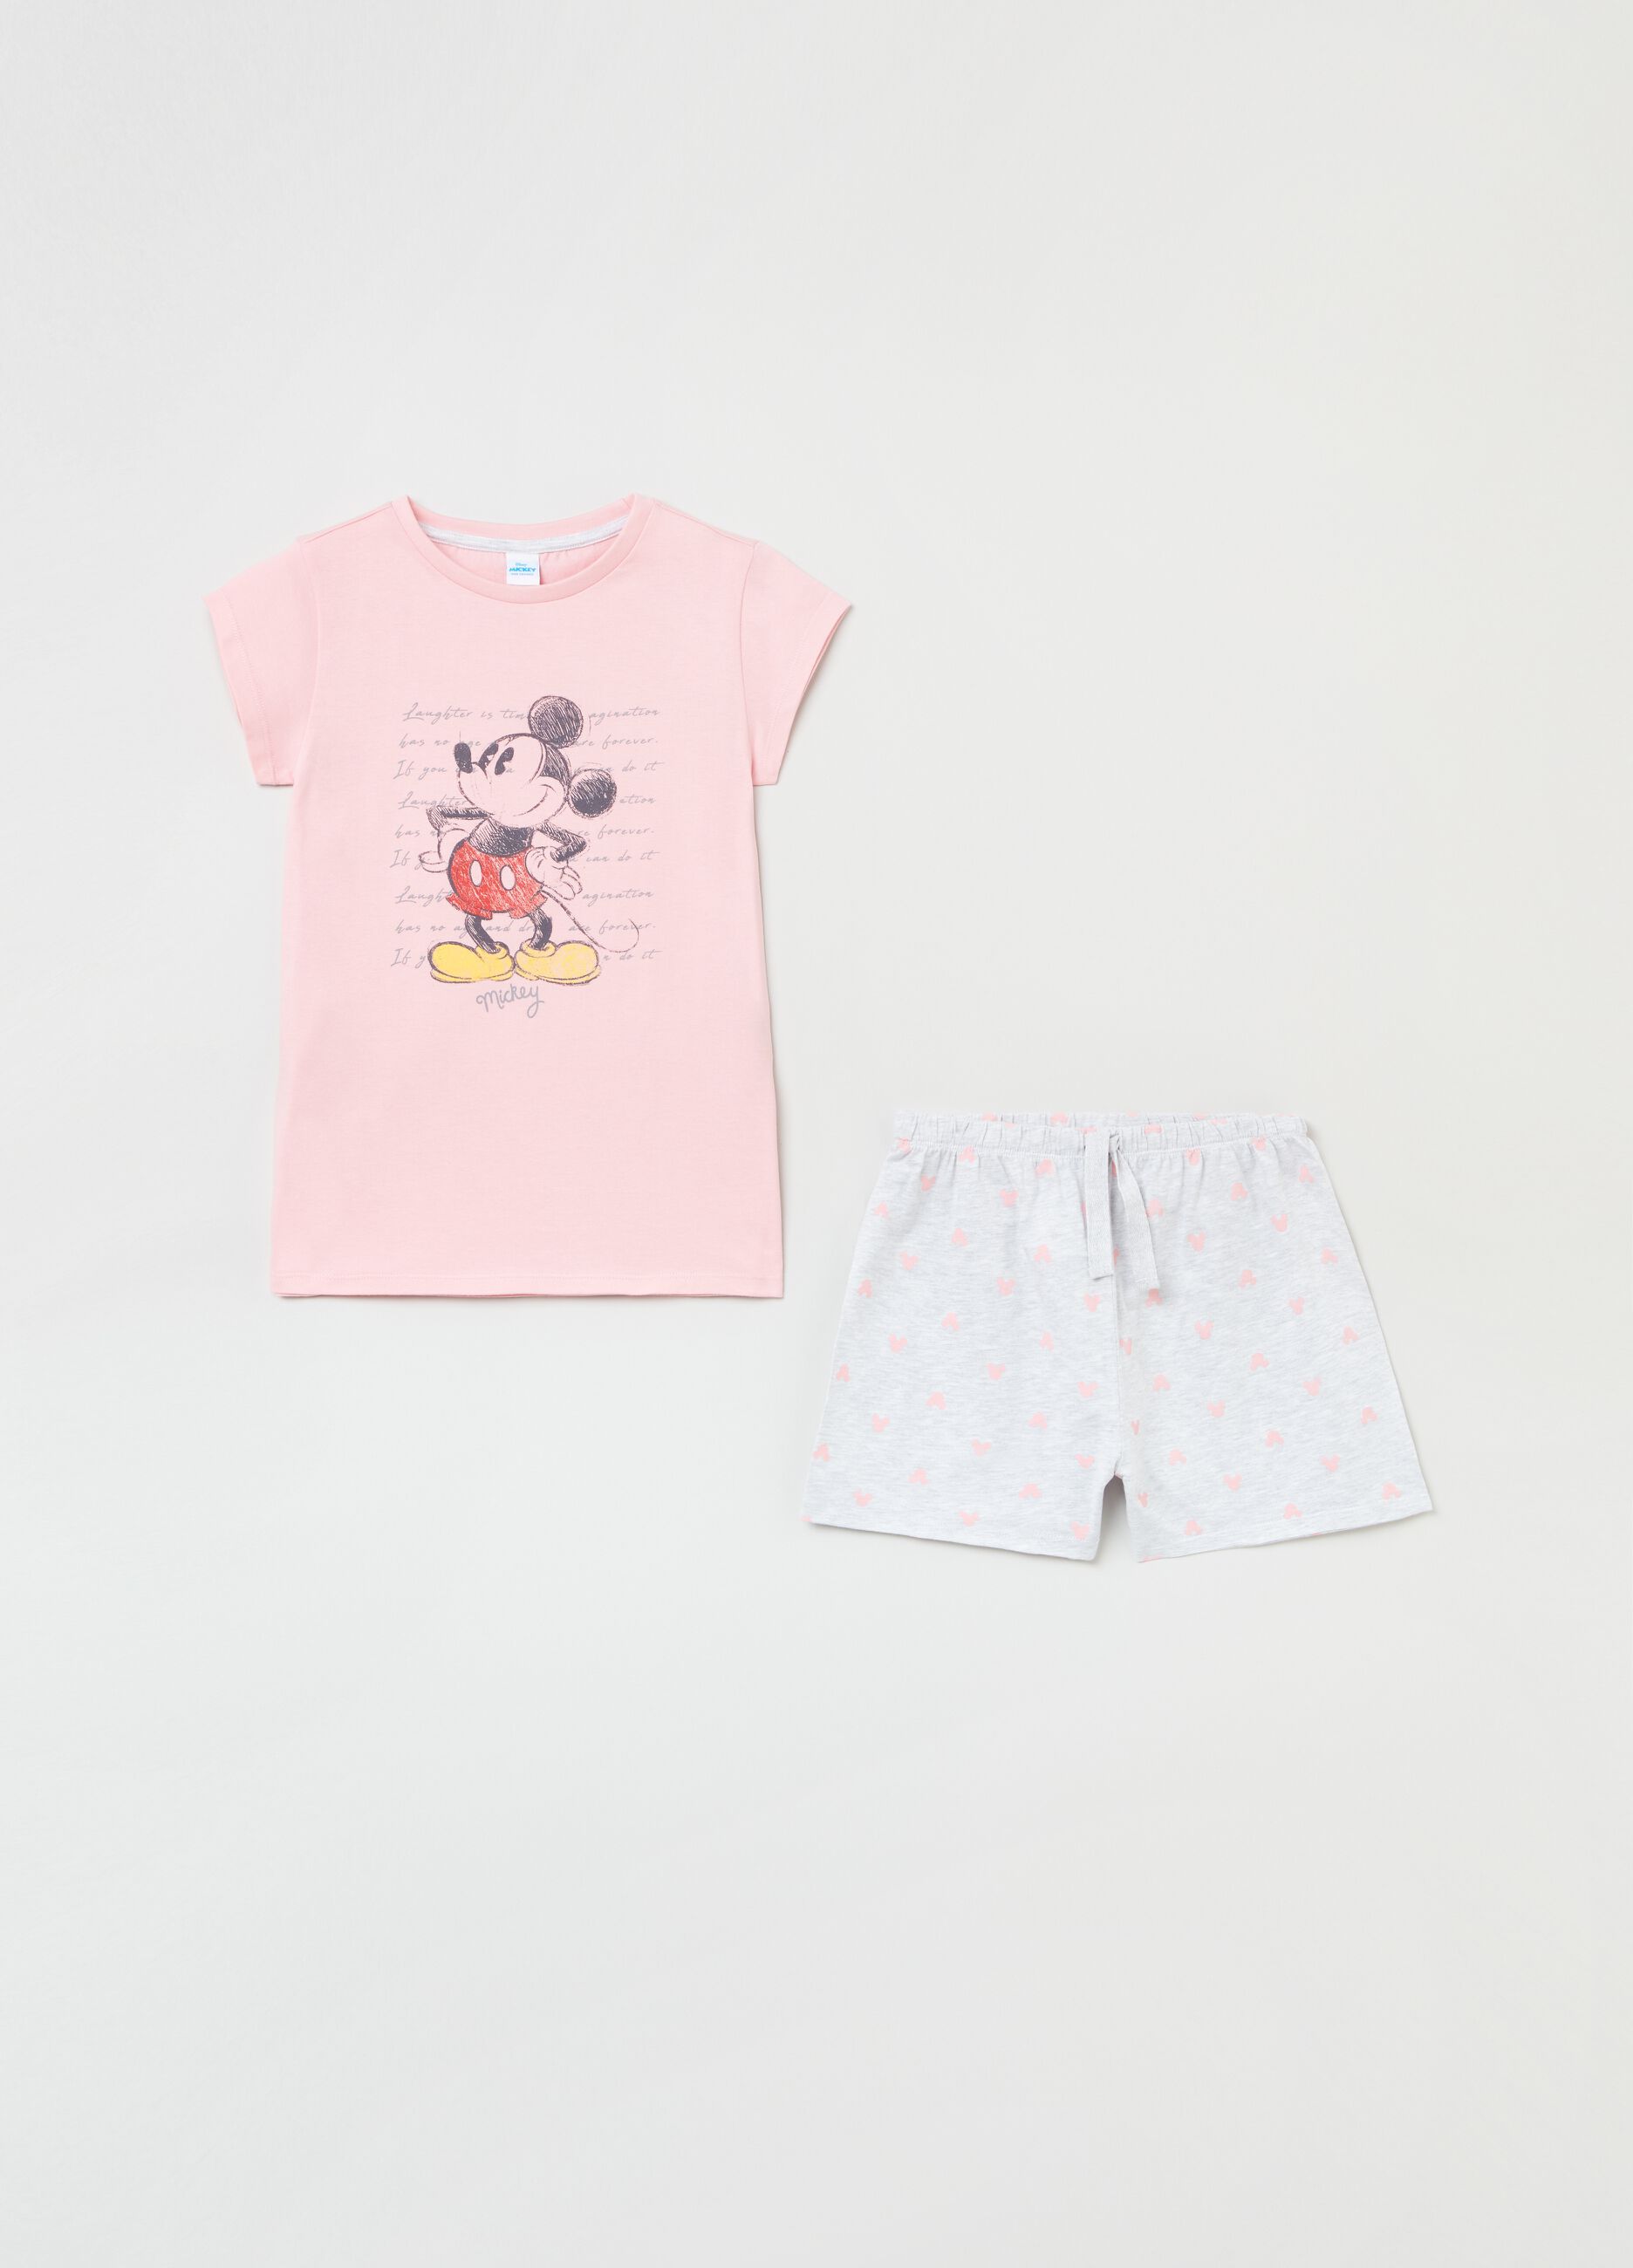 Short pyjamas with Disney Mickey Mouse print